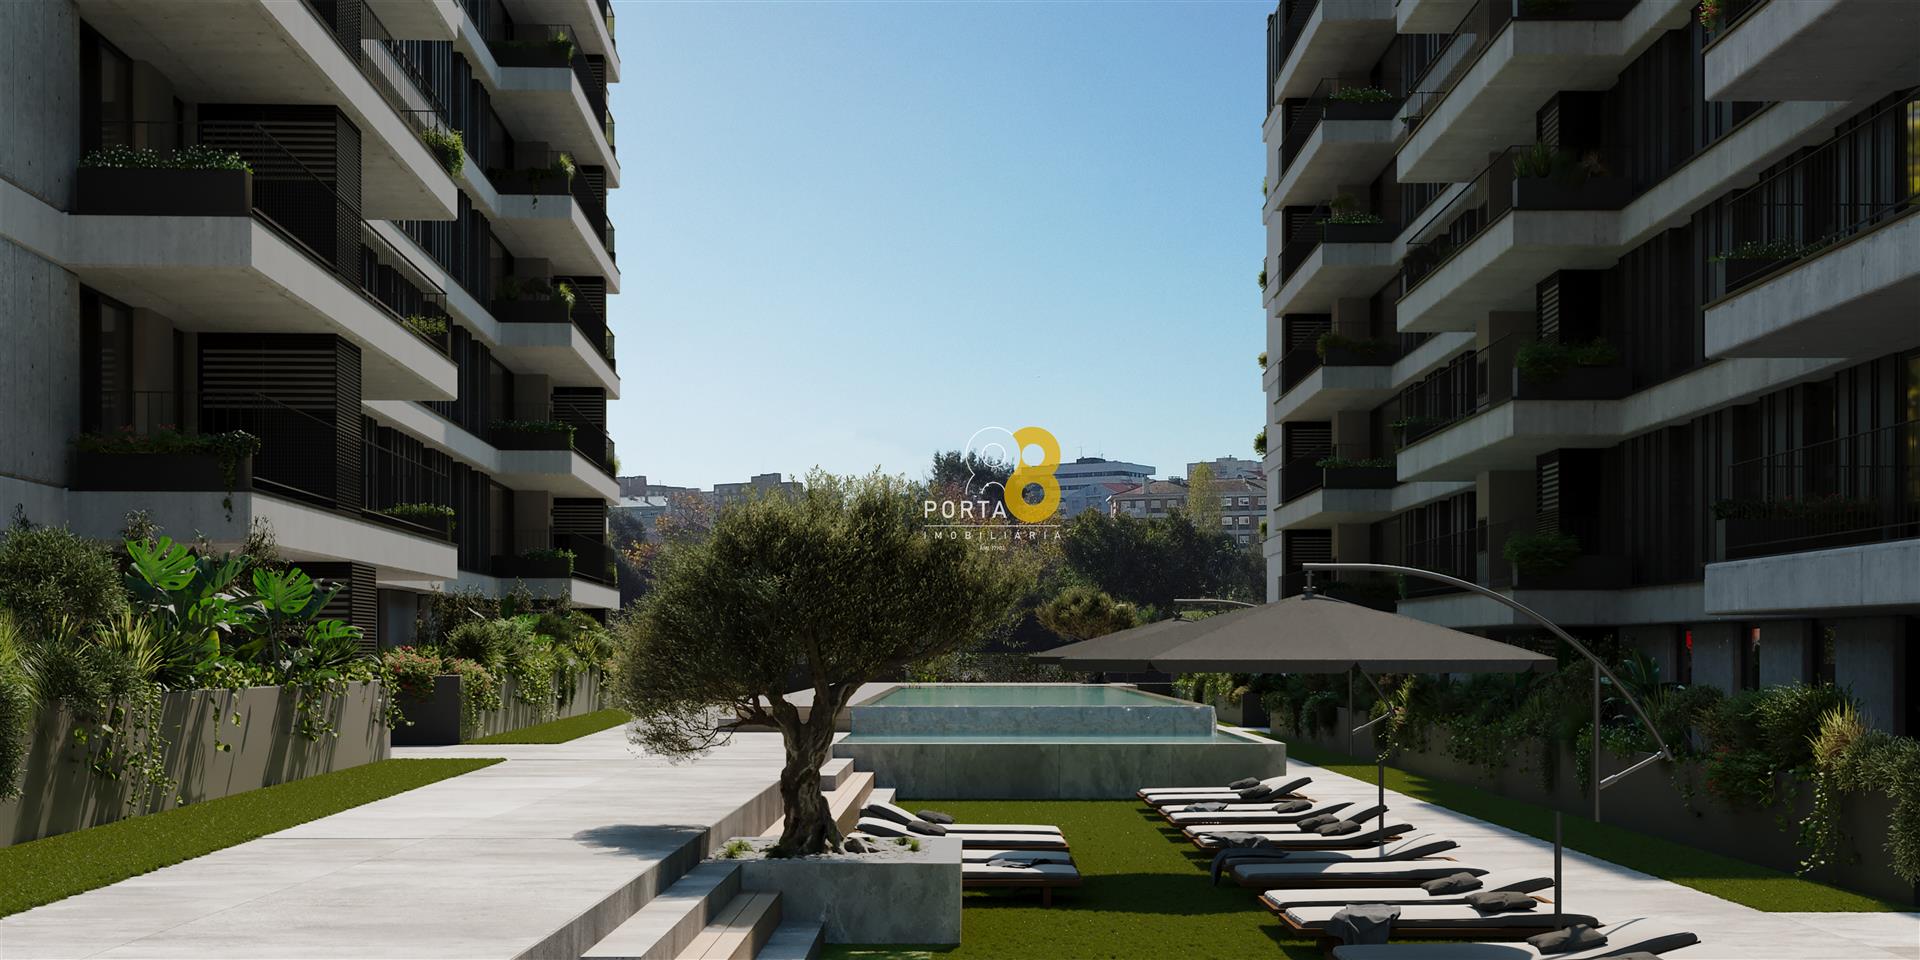 Wunderschönes T3 mit 3 Suiten, Balkon mit 50m2 und Garage für 2 Autos, Porto